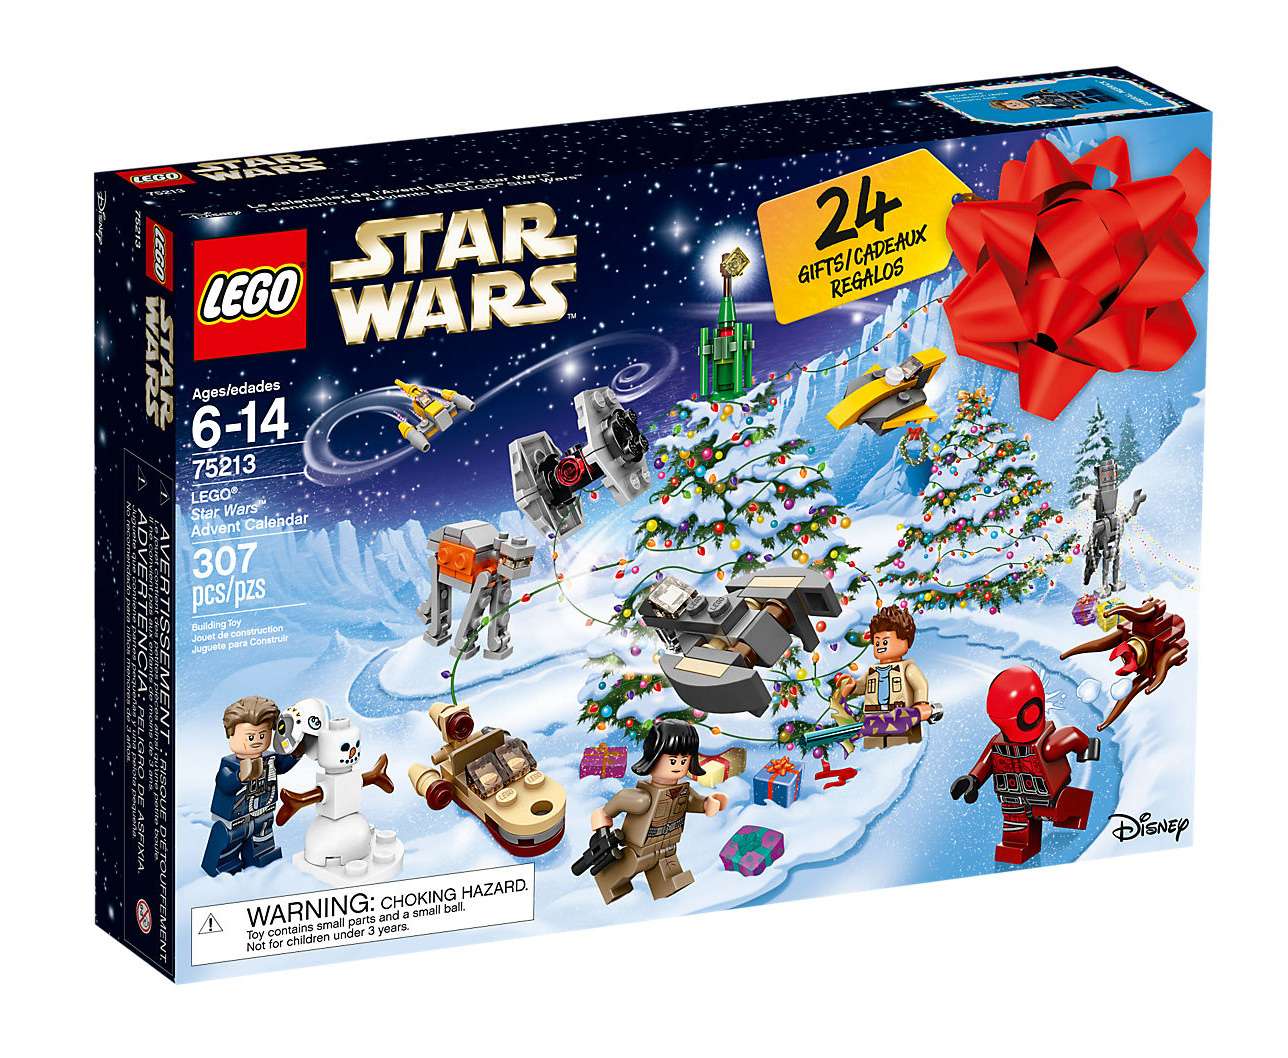 LEGO Star Wars - Advent Calendar - 2018 (75213)